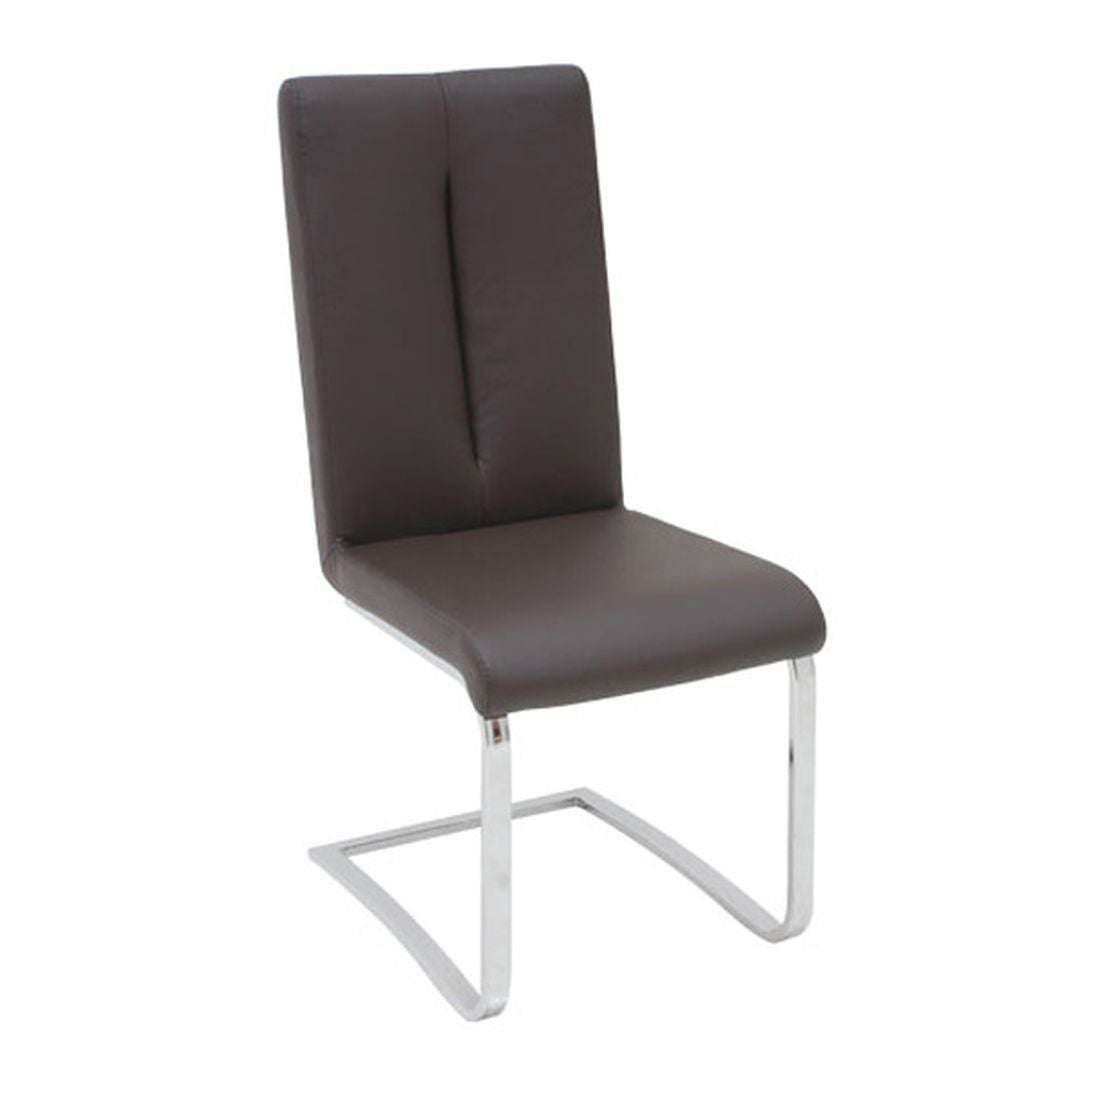 เก้าอี้ทานอาหาร เก้าอี้เหล็กเบาะหนัง รุ่น Hoop-SB Design Square